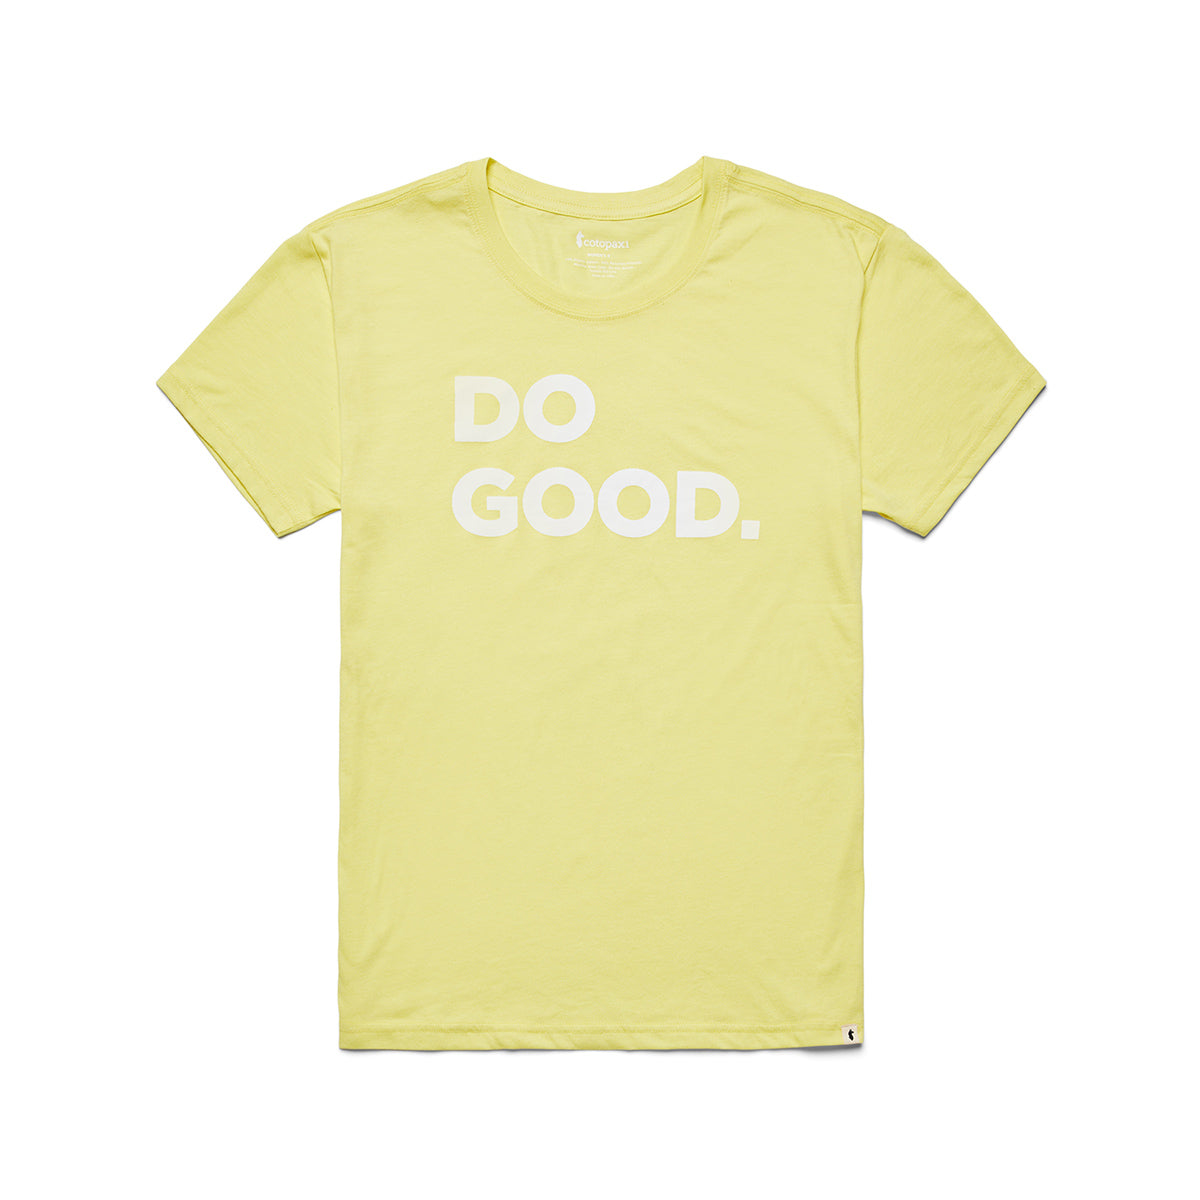 Do Good T-Shirt - WOMENS